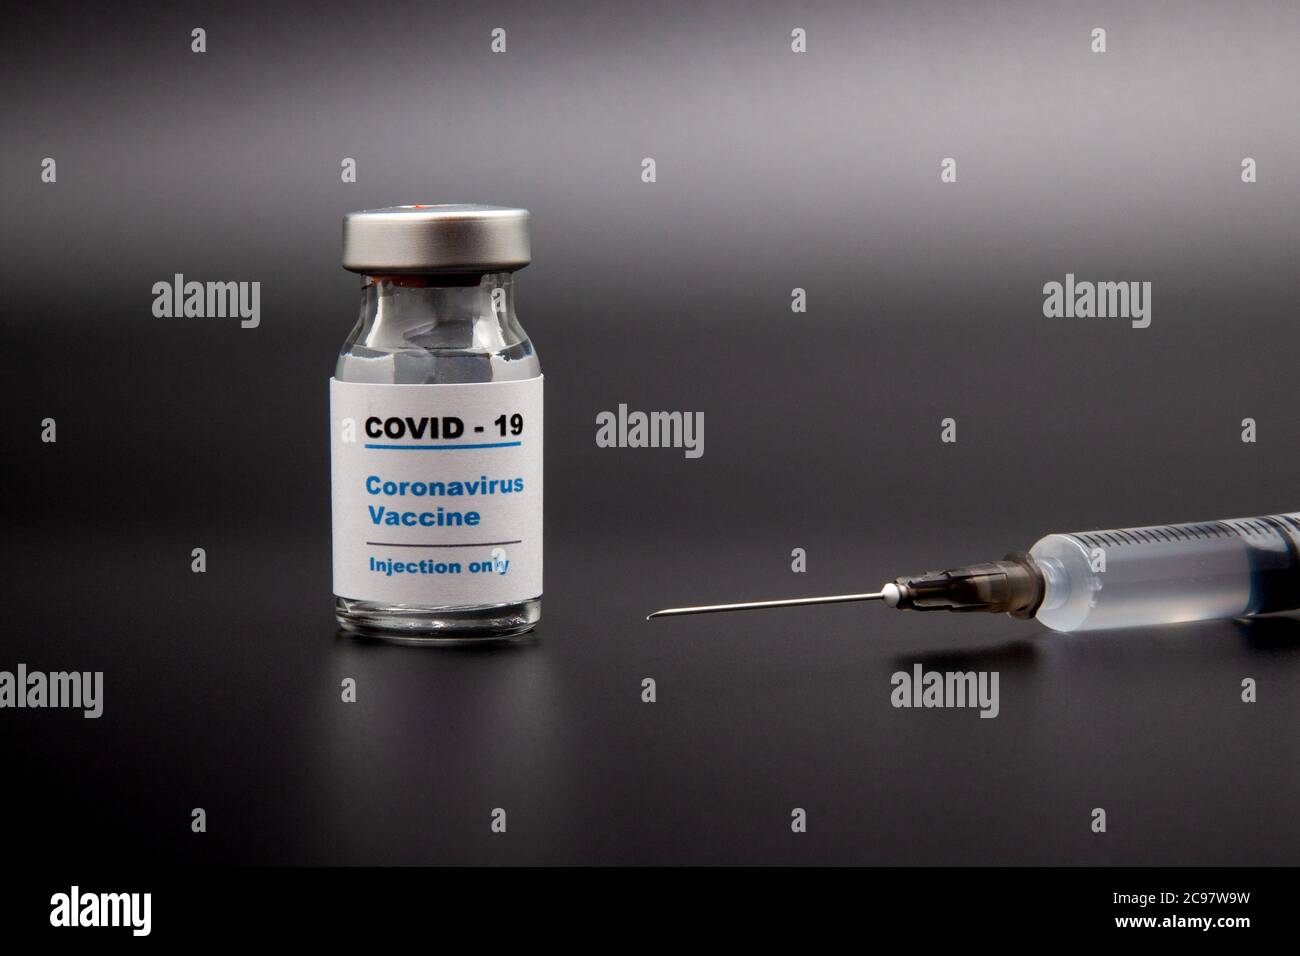 Flacone di vaccino piccolo (flaconcino) con un'etichetta che riporta "Covid - 19 Corona virus Vaccine Injection only" e una siringa medica isolata su vaccinazione nera Foto Stock